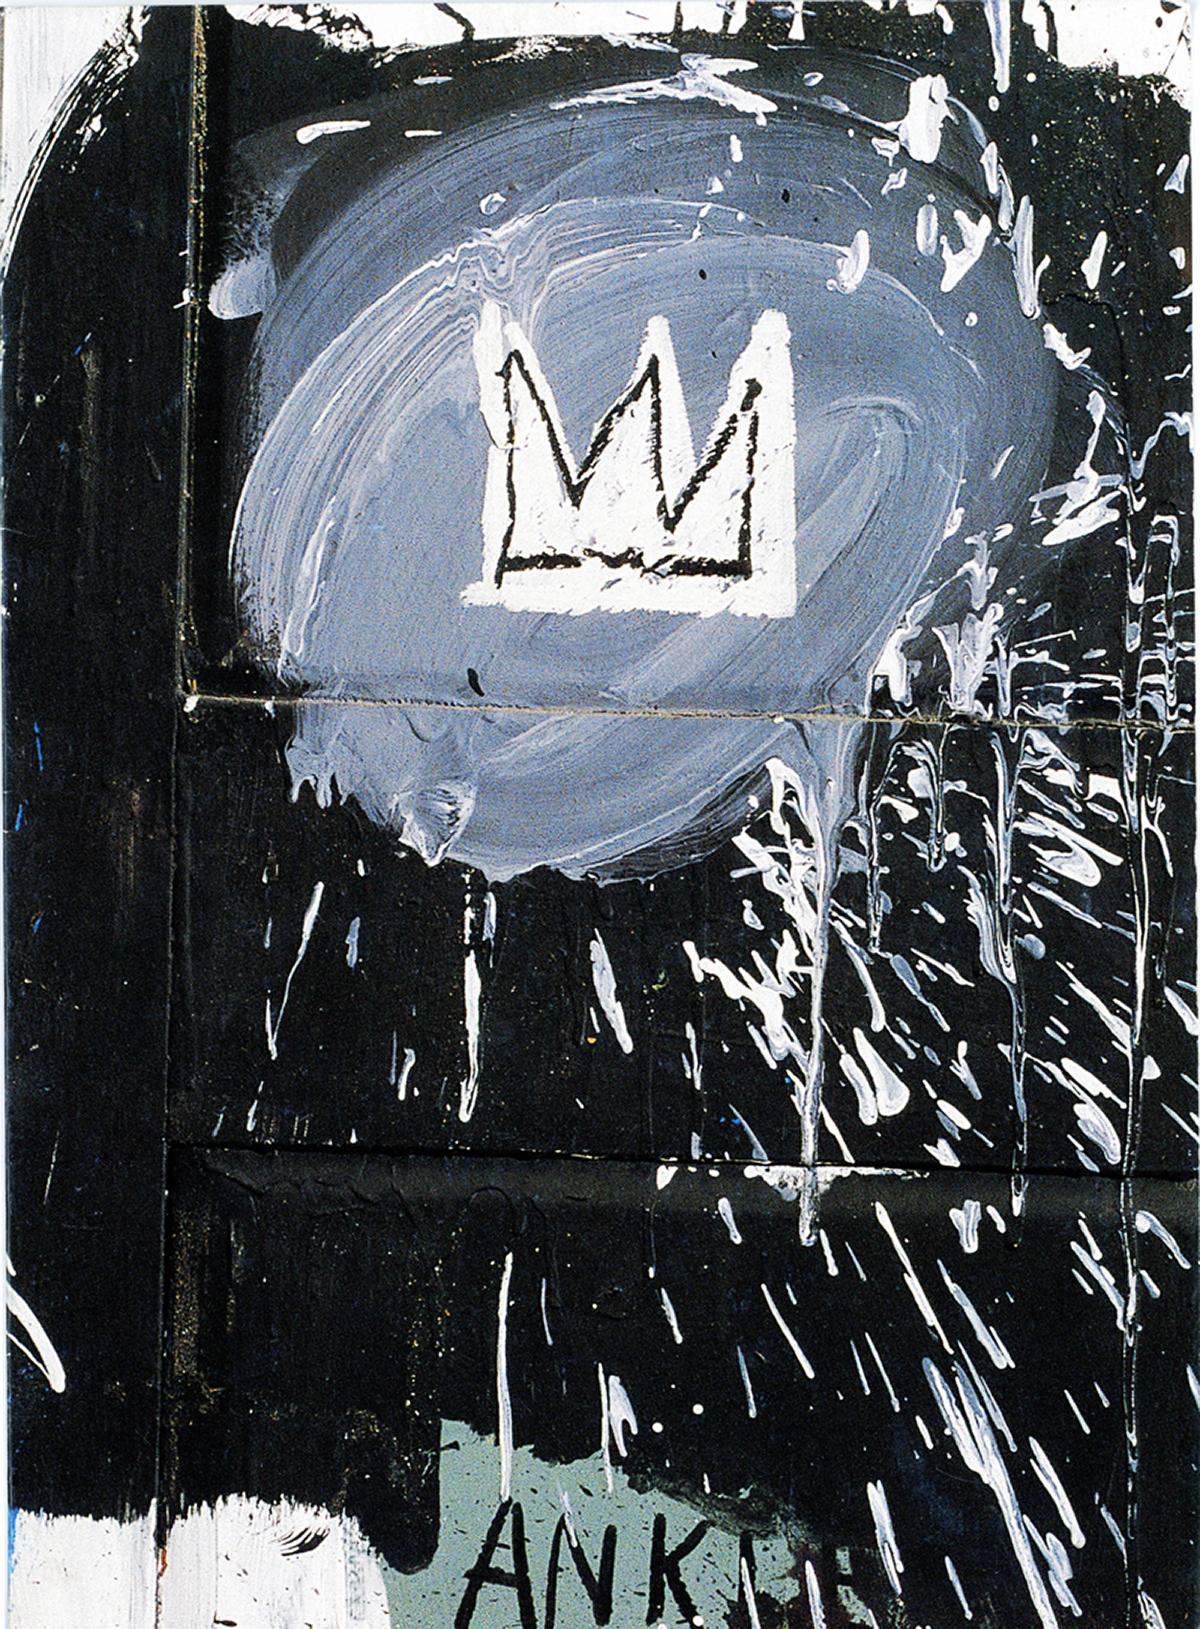 Ankündigung von Basquiat Paris, 1998 (Vintage Basquiat)  – Print von after Jean-Michel Basquiat